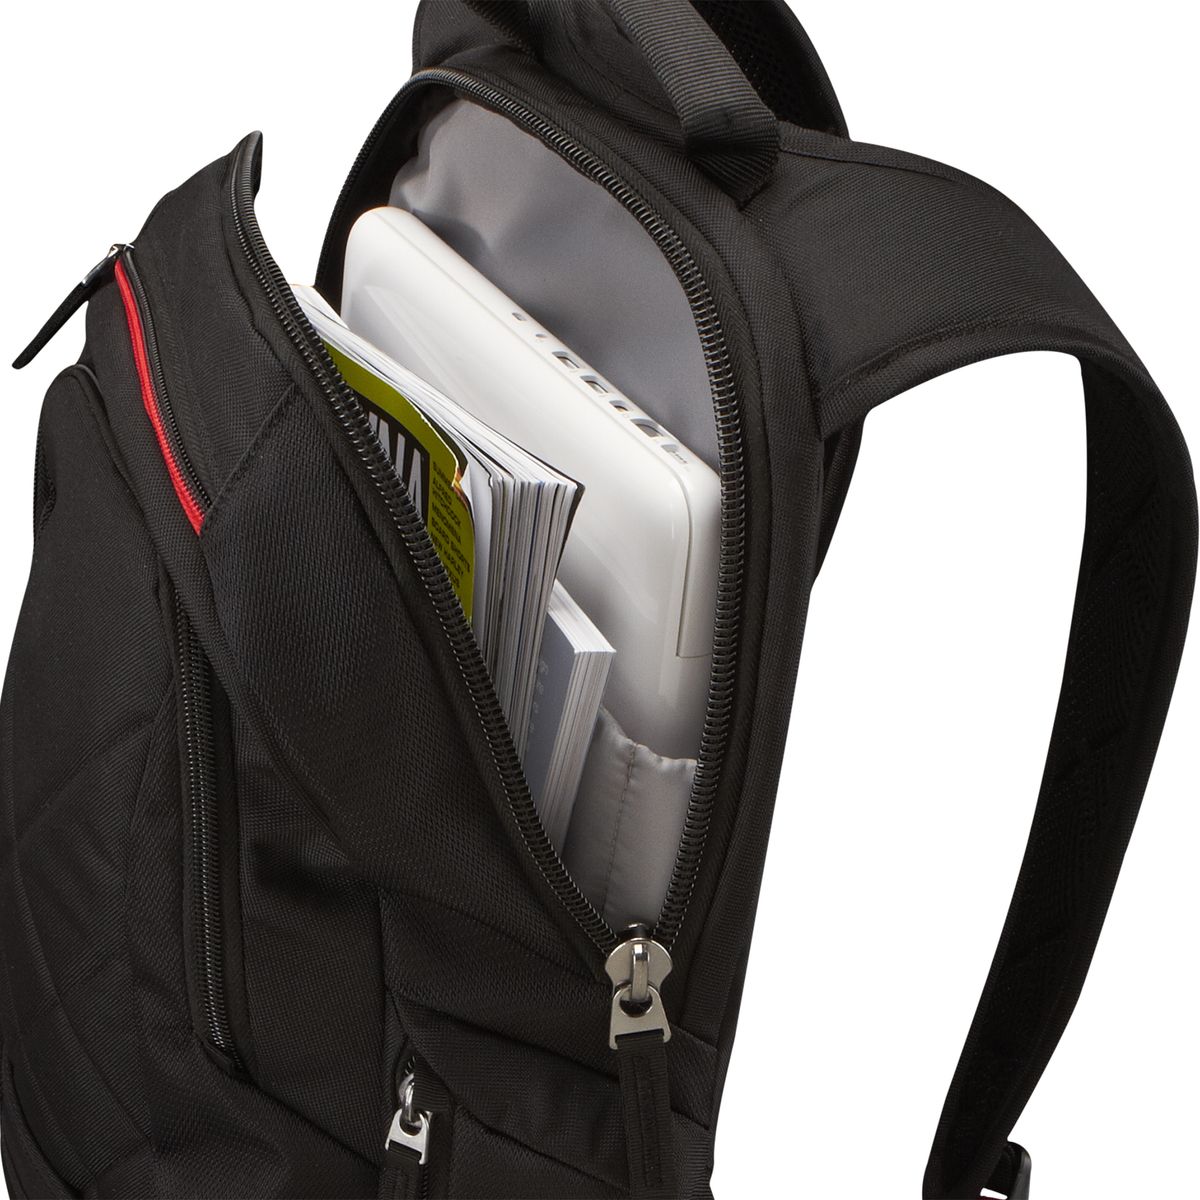 Case Logic Laptop Backpack 14" laptop backpack